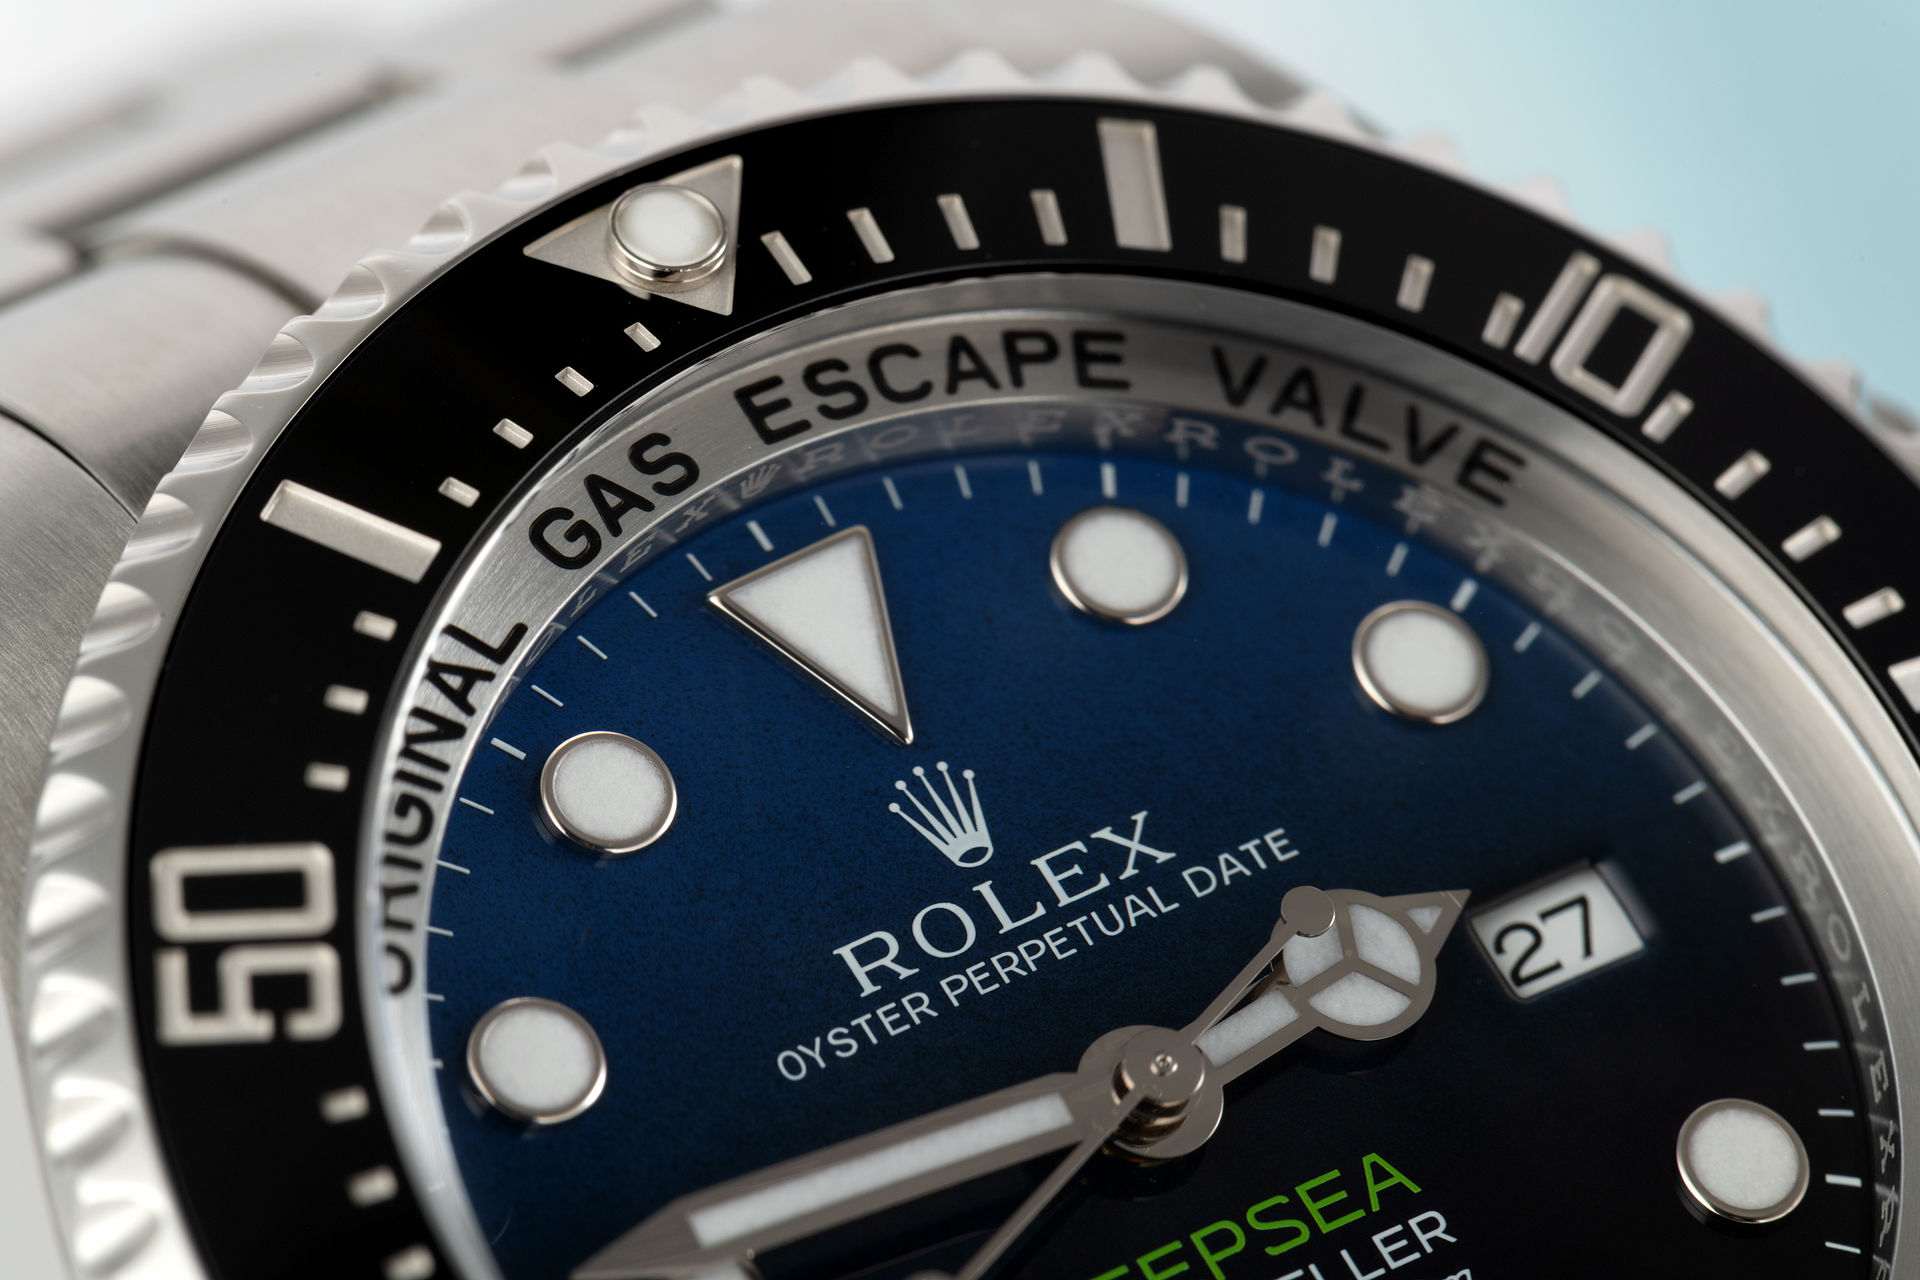 D-Blue James Cameron | ref 116660 | Rolex Sea-Dweller Deepsea